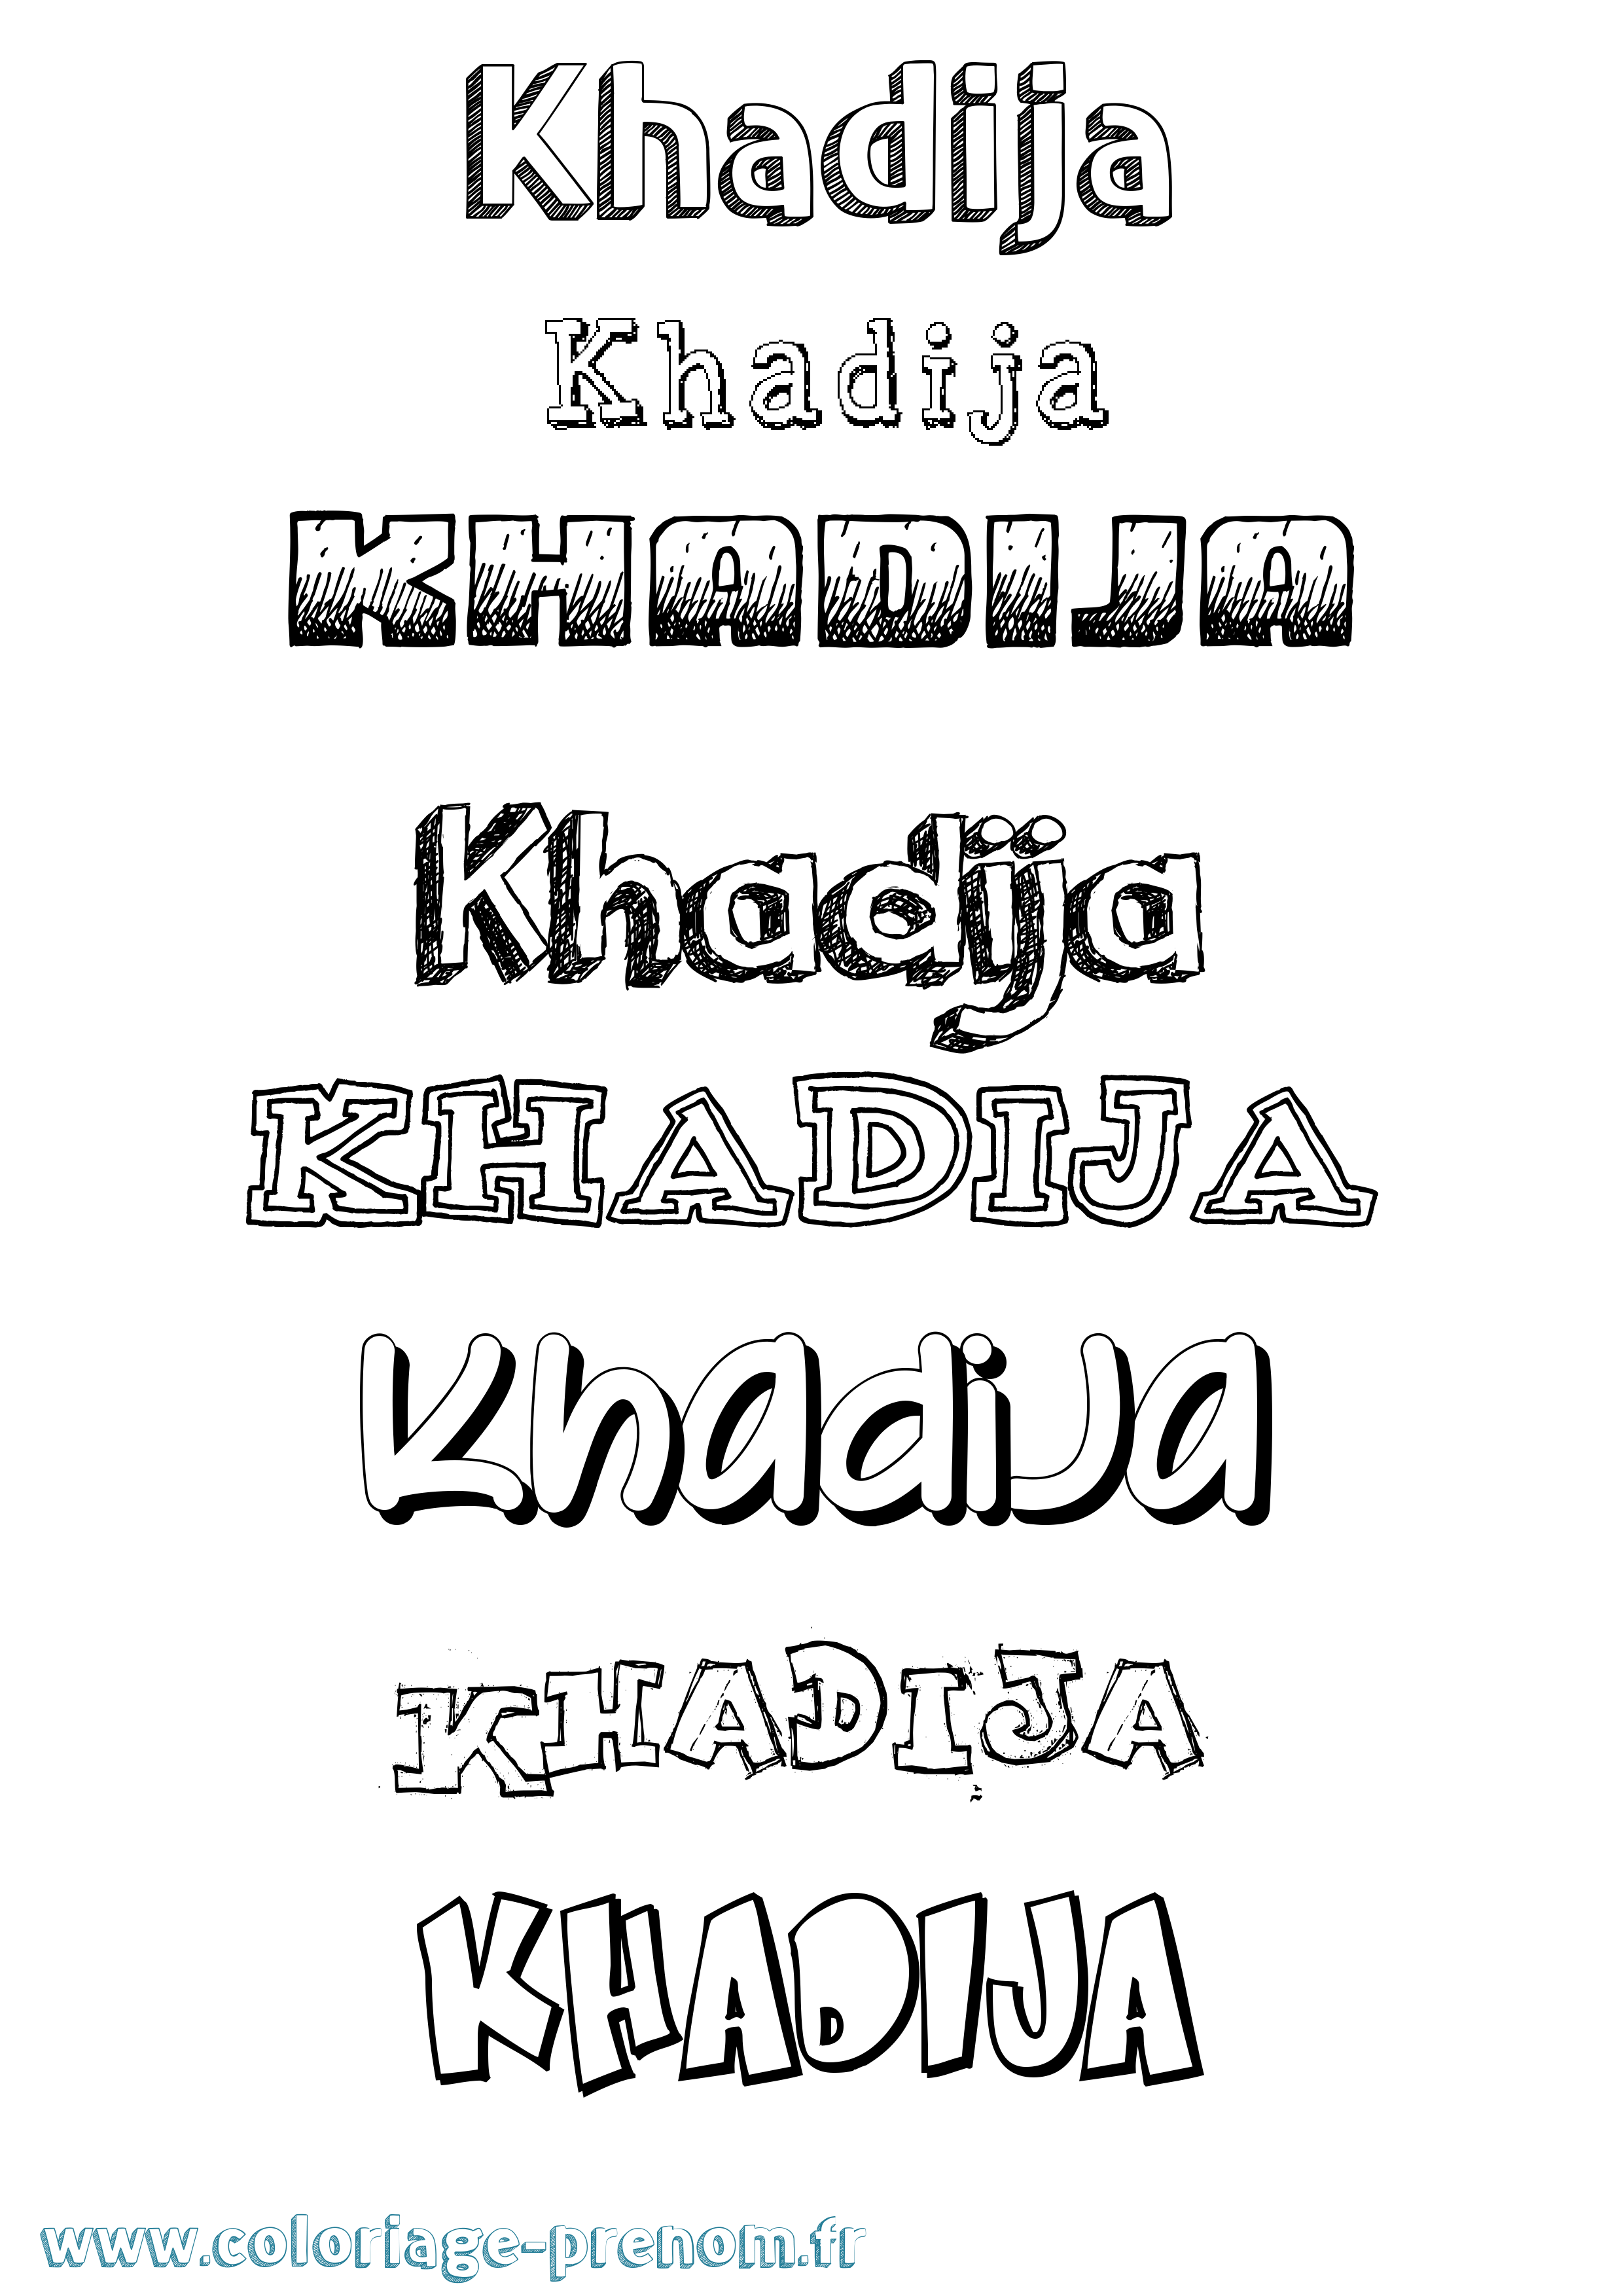 Coloriage prénom Khadija